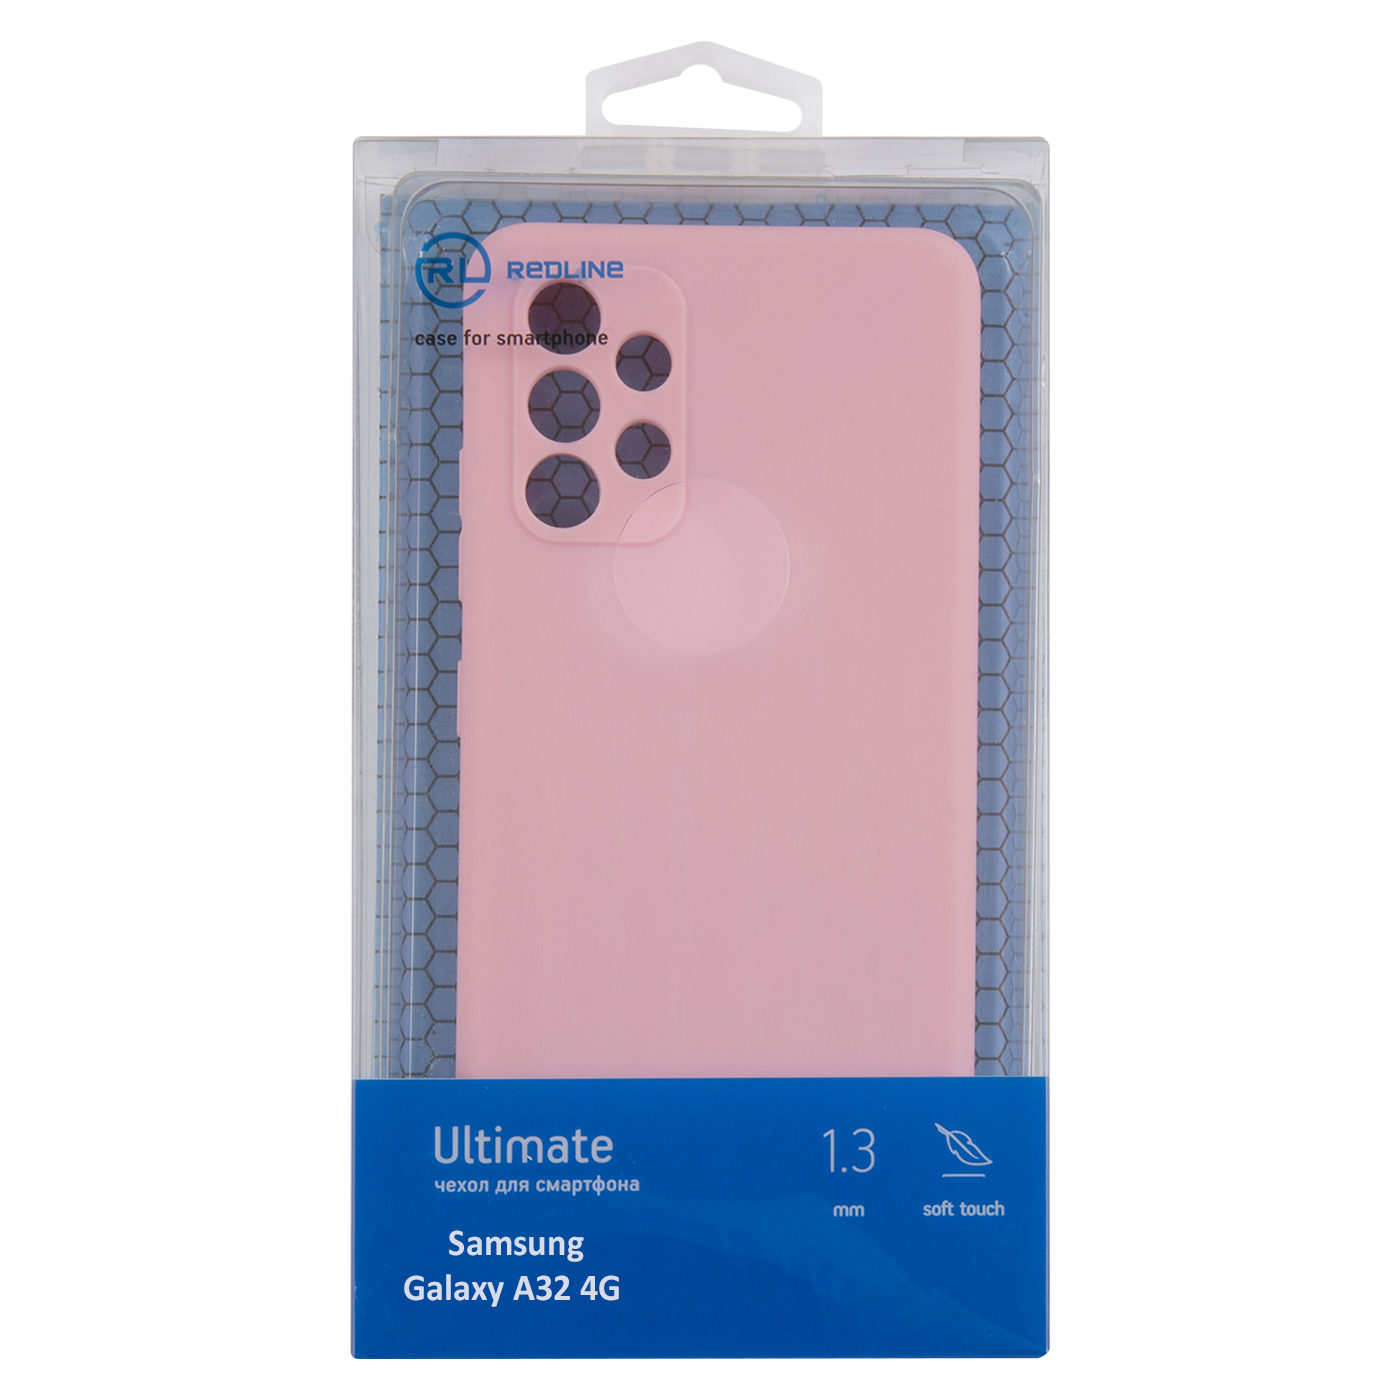 Чехол защитный Red Line Ultimate для Samsung Galaxy A32 4G, розовый УТ000024008 защитный чехол для смартфона red line ultimate для samsung galaxy a32 4g голубой